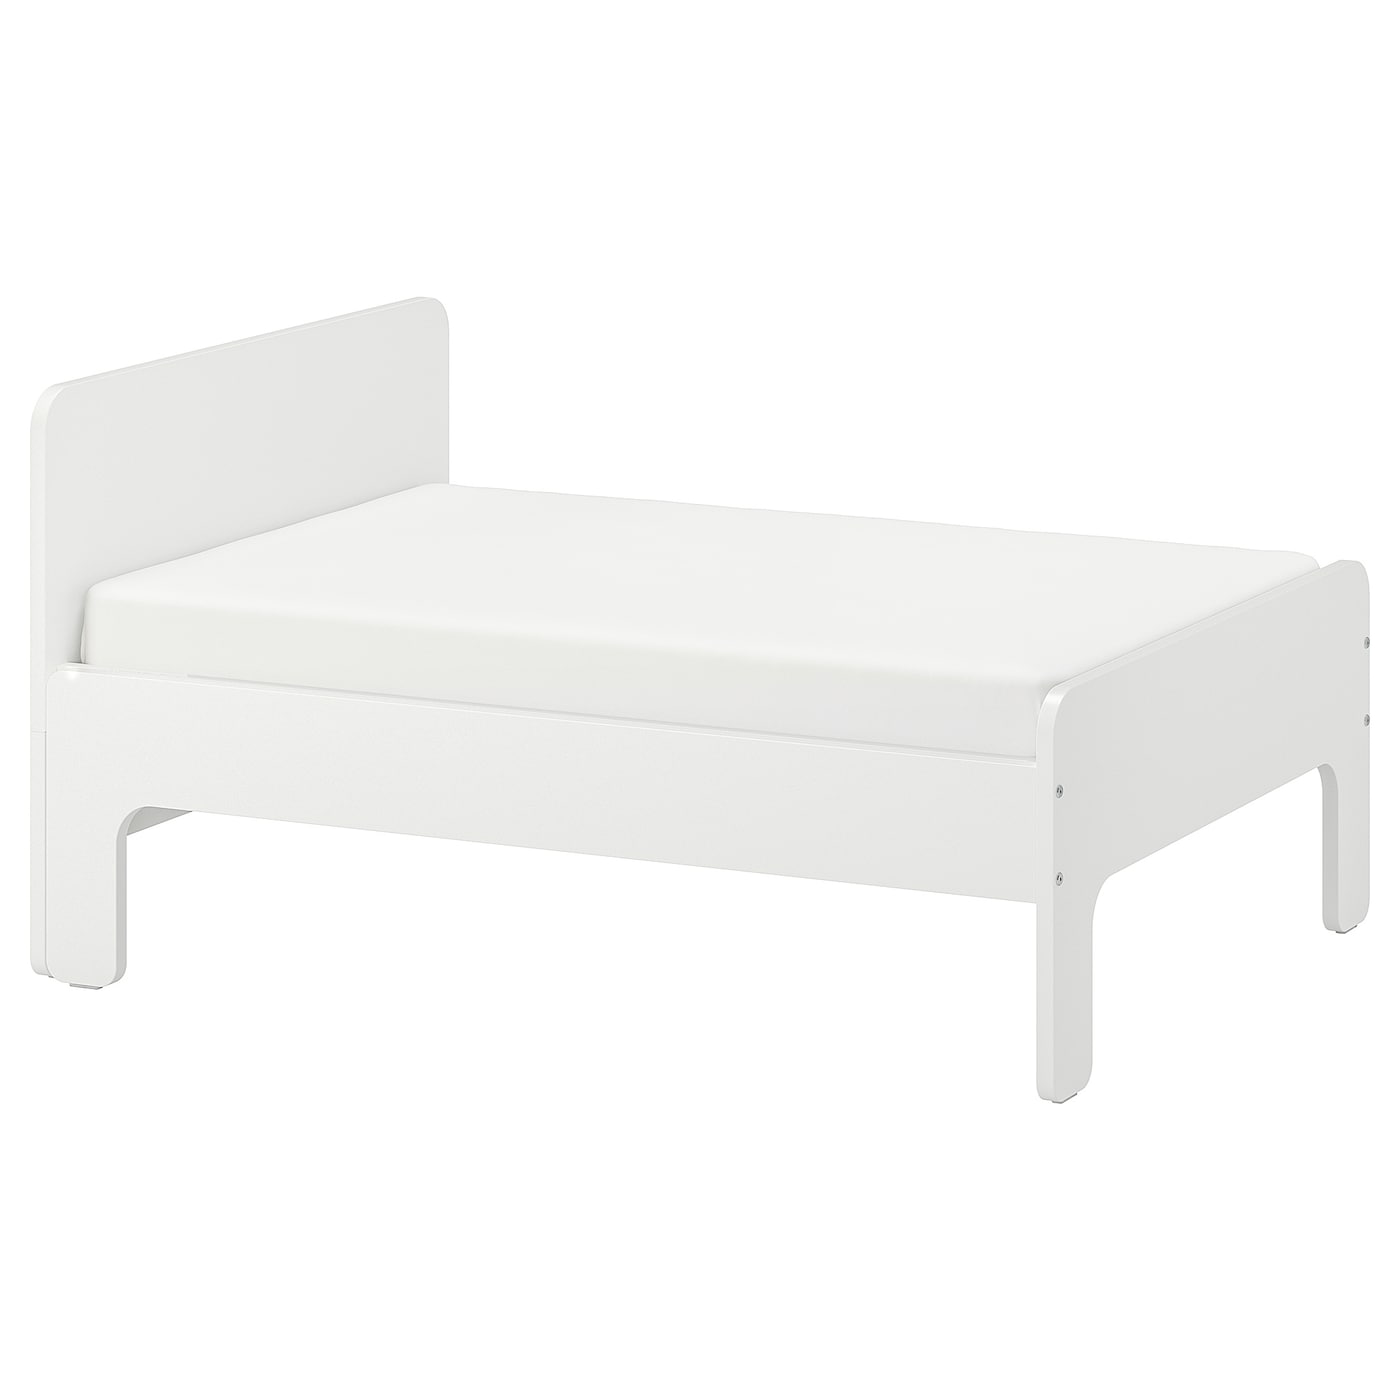 Кровать одноярусная - IKEA SLÄKT/LURÖY/ SLАKT/LURОY/СЛЭКТ/ЛУРОЙ ИКЕА  , 80x200 см, белый